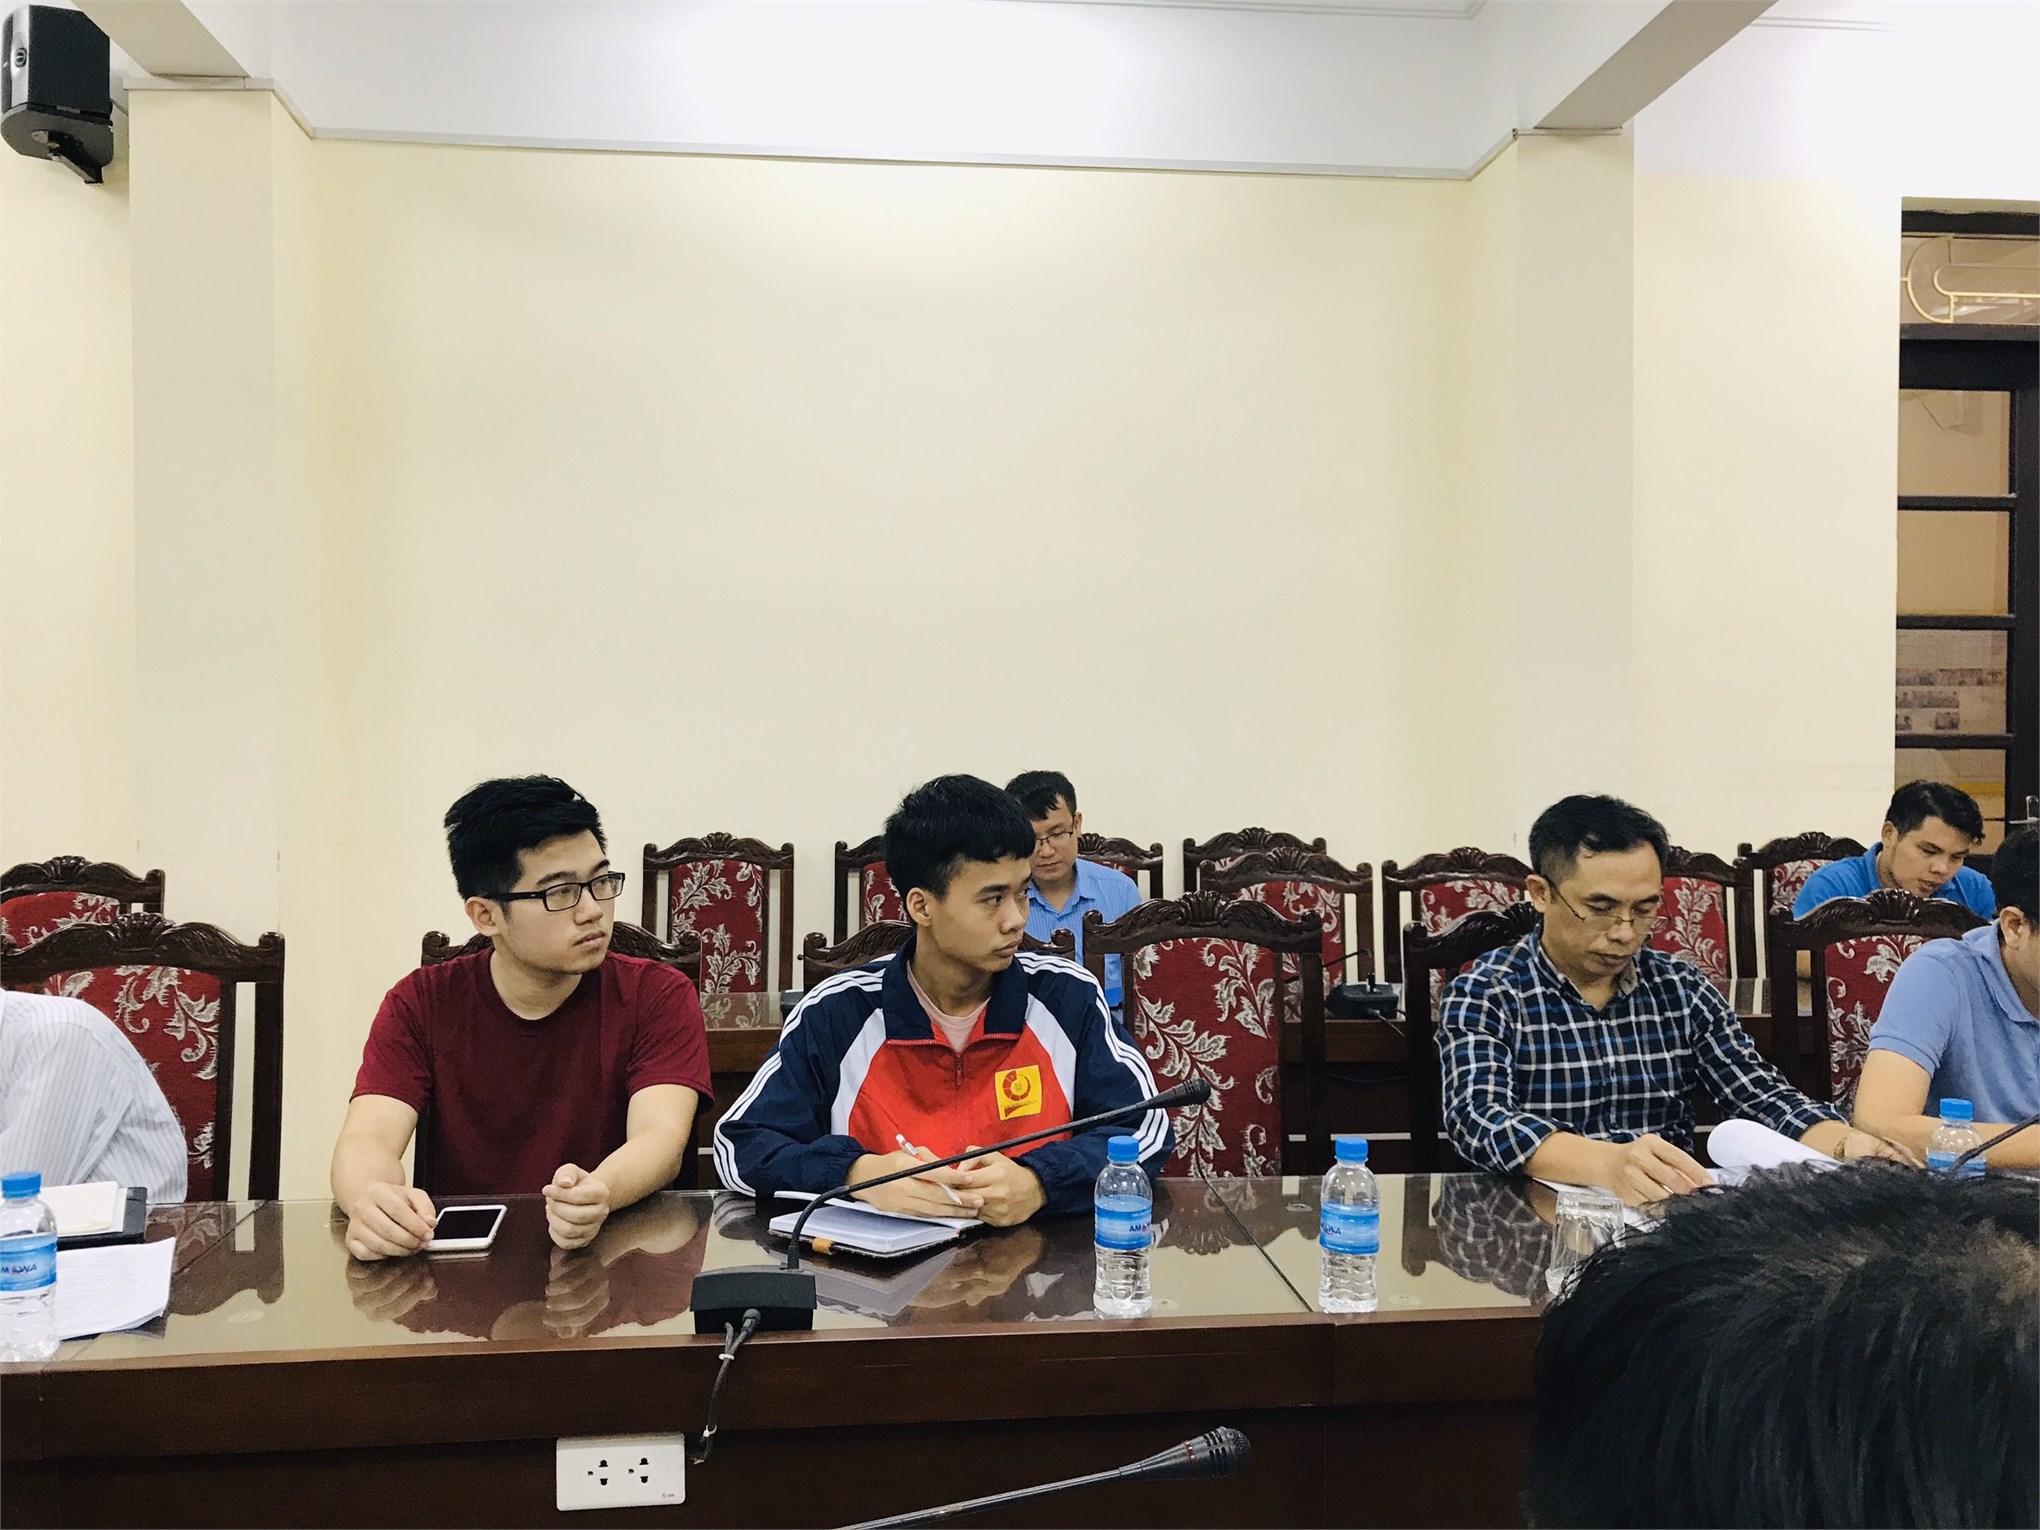 02 thí sinh khoa Cơ khí tham dự thi tay nghề thành phố Hà Nội năm 2019